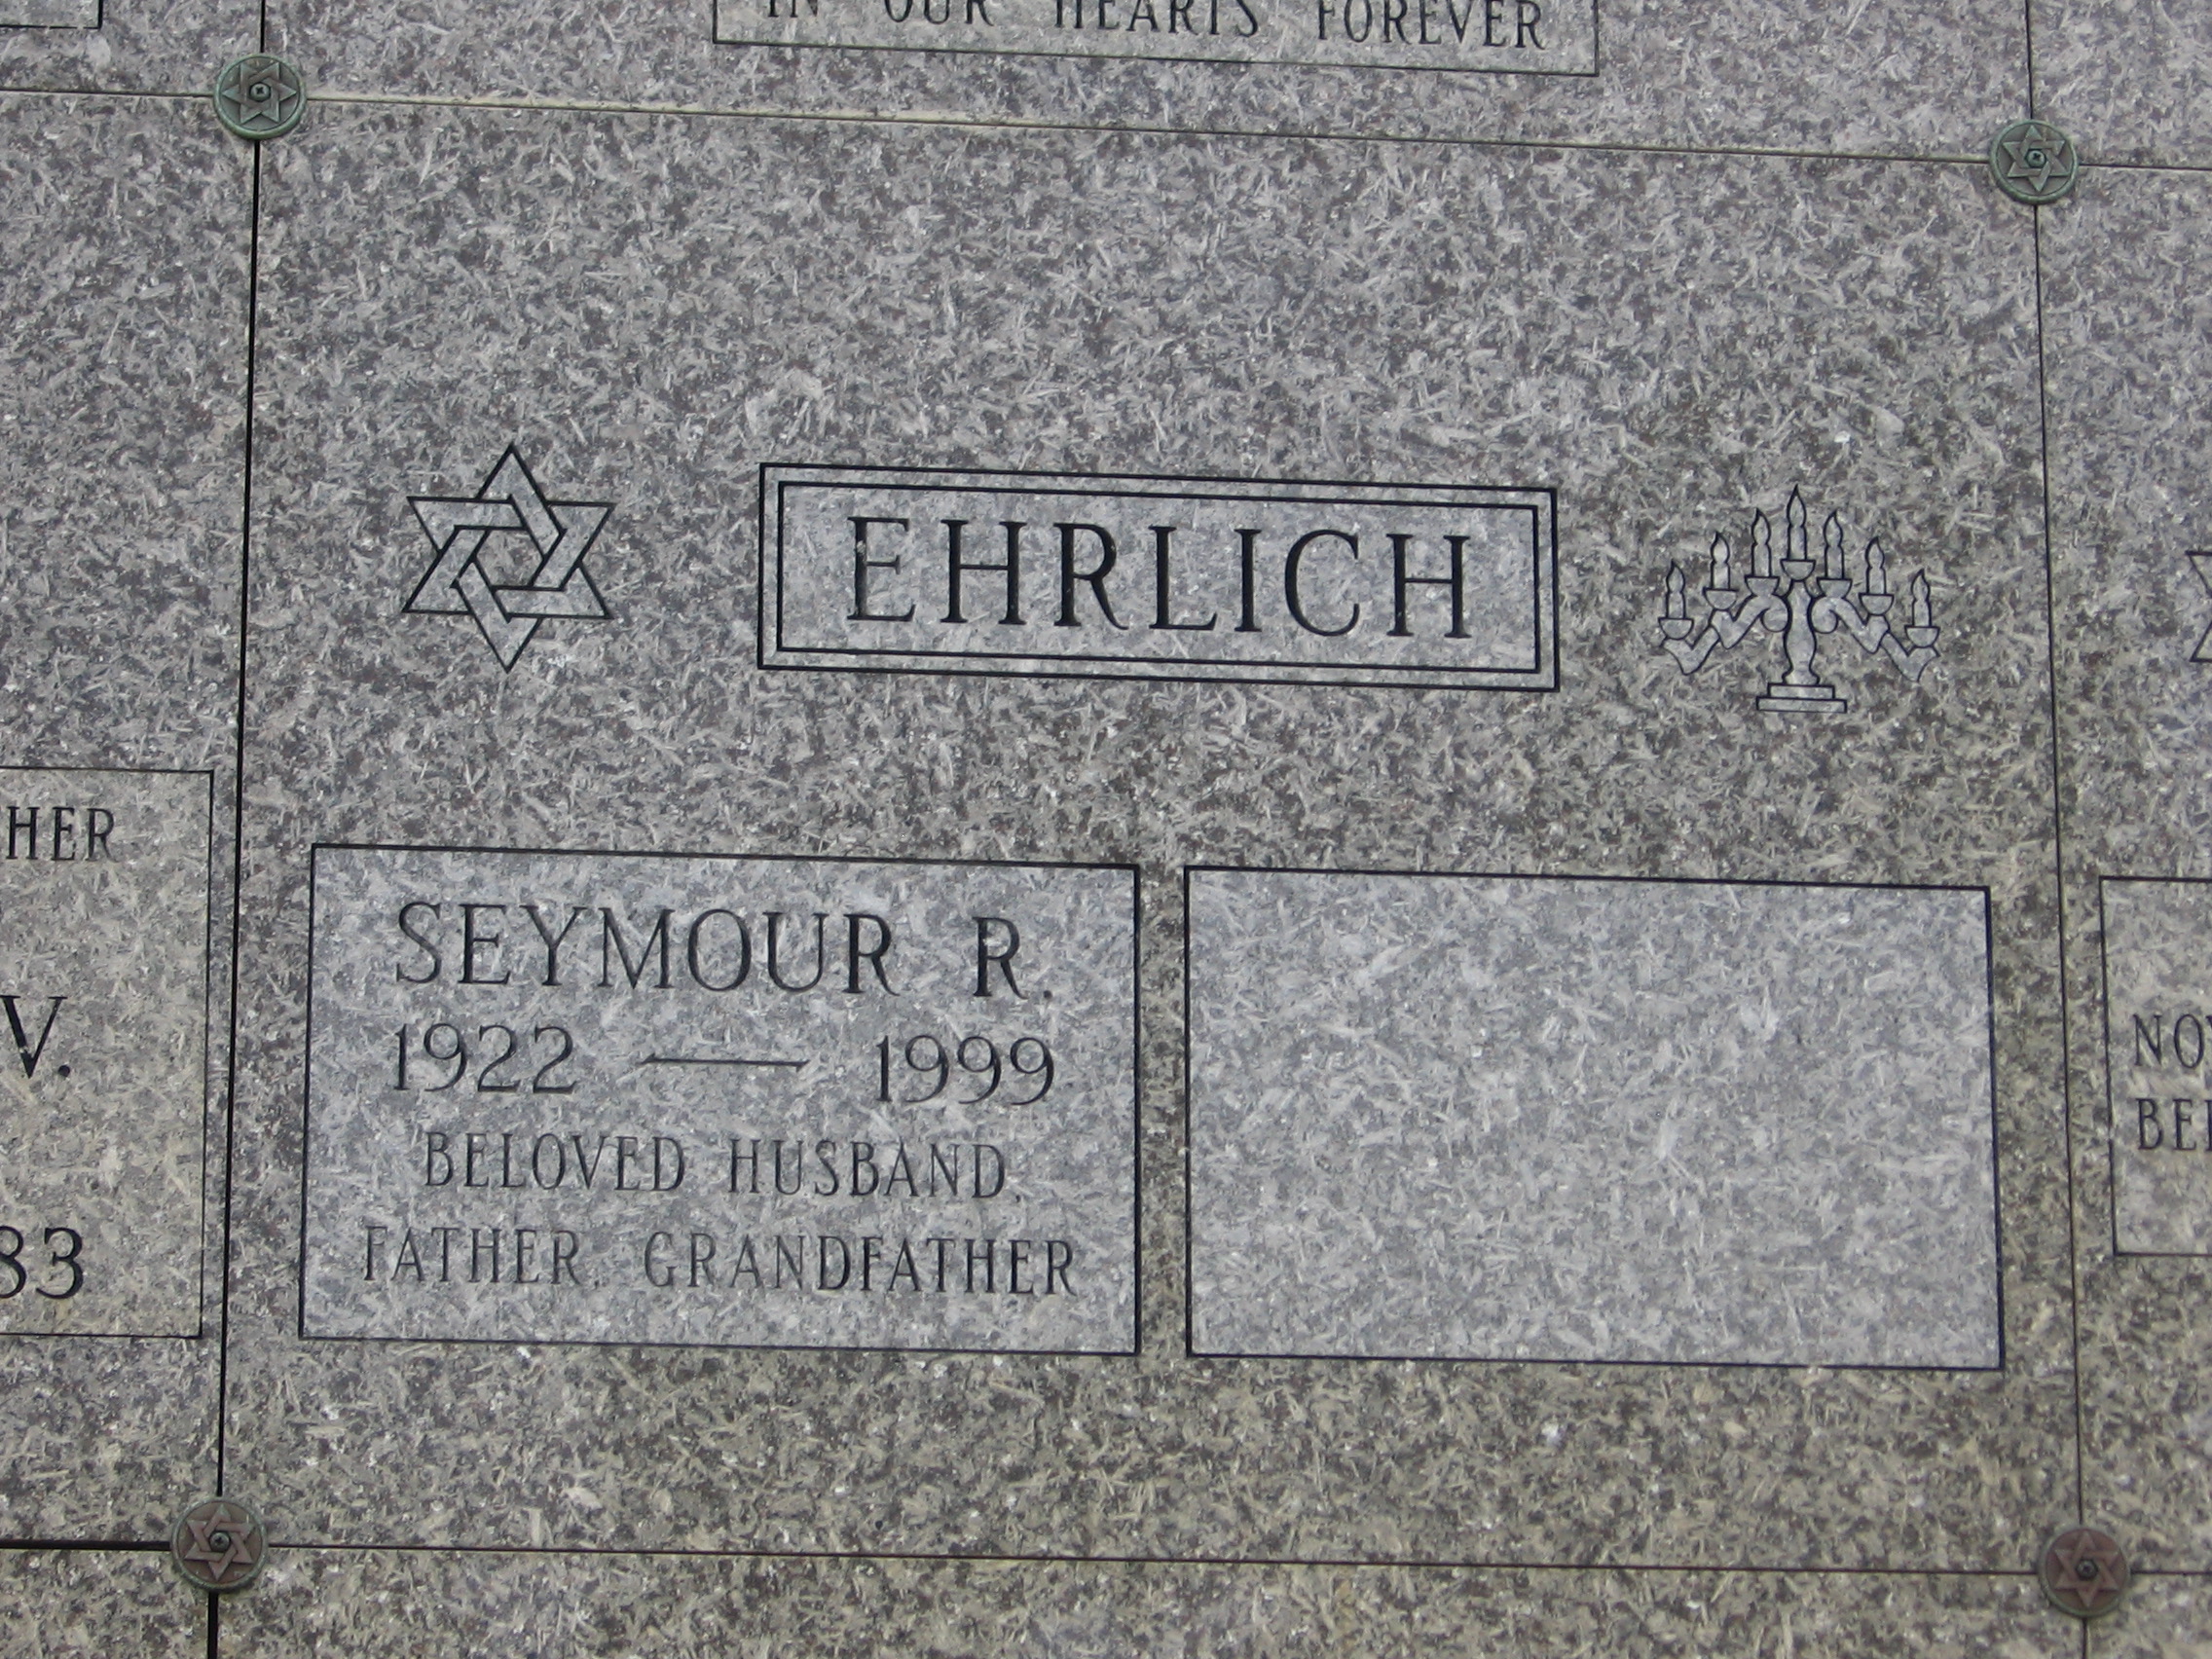 Seymour R Ehrlich